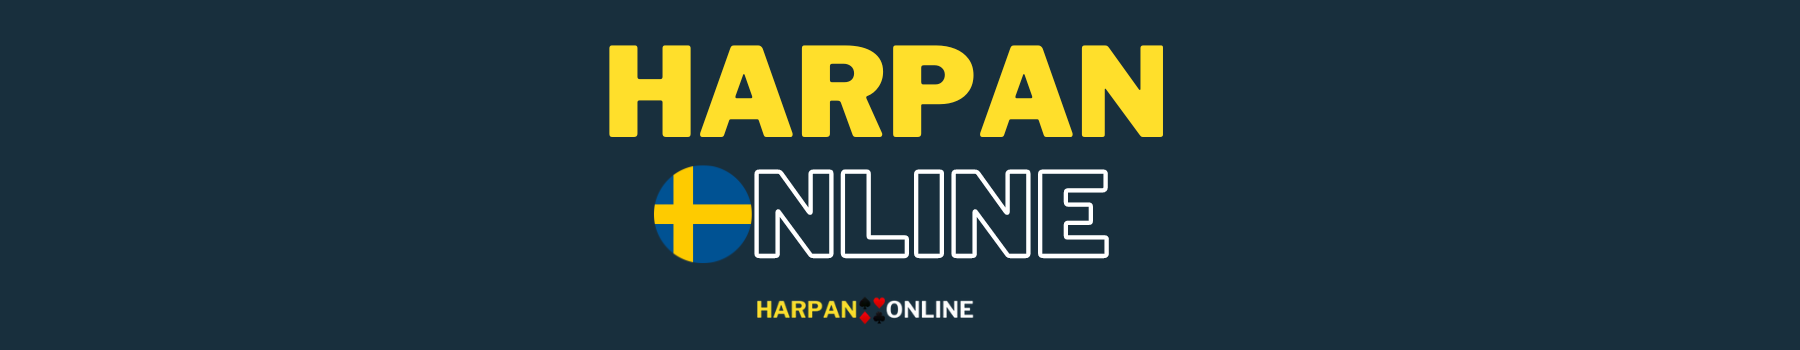  harpan Online